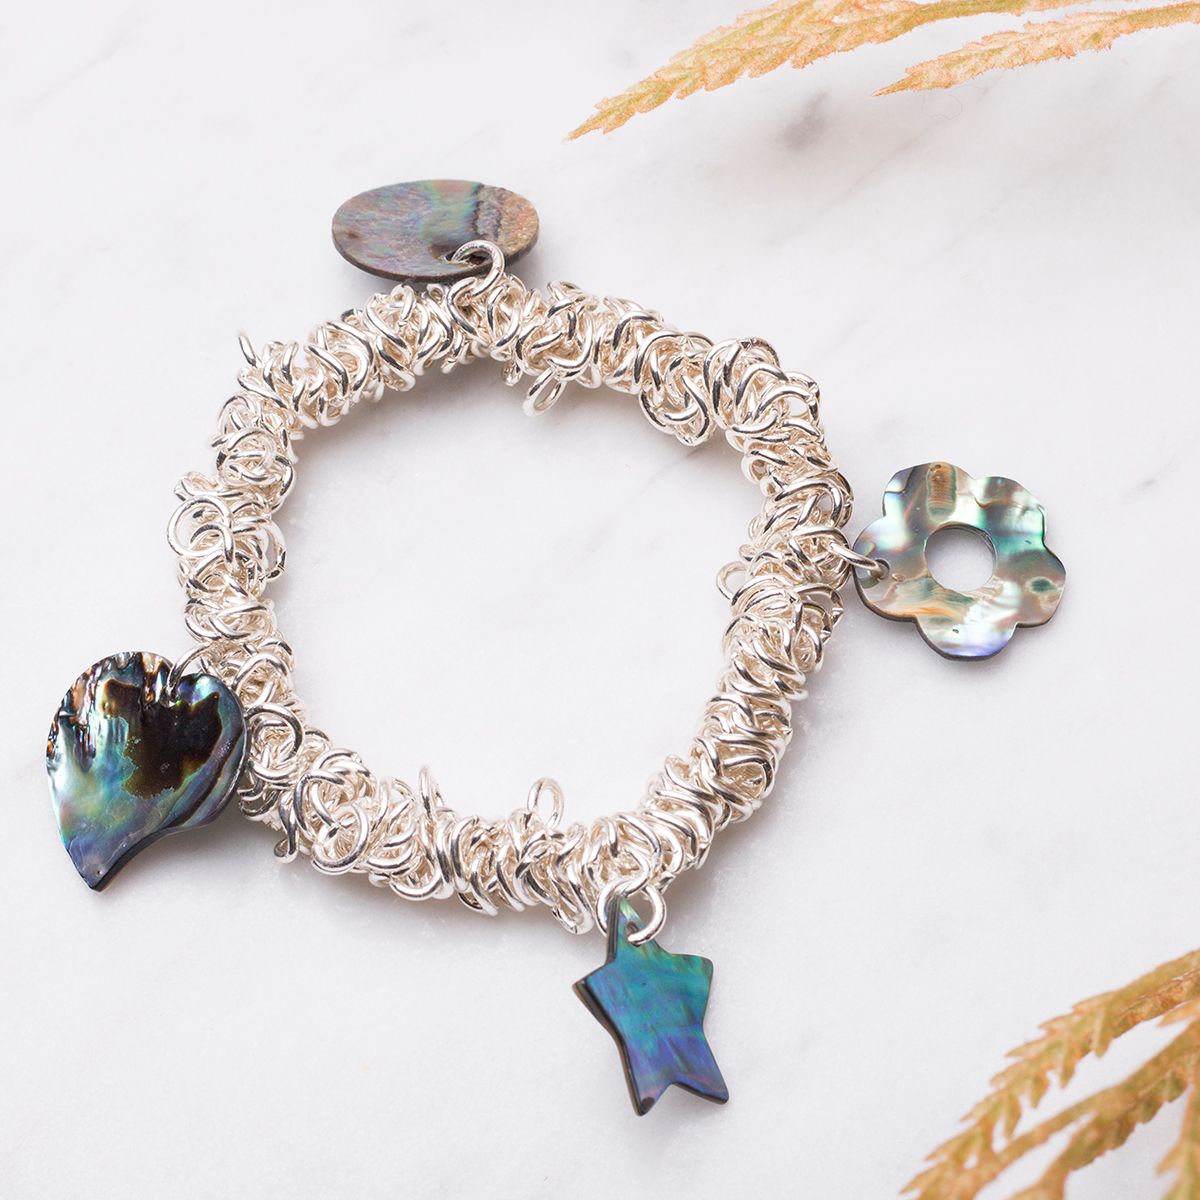 Charm Bracelet Making Kit Mermaid Charms For Bracelets Making DIY